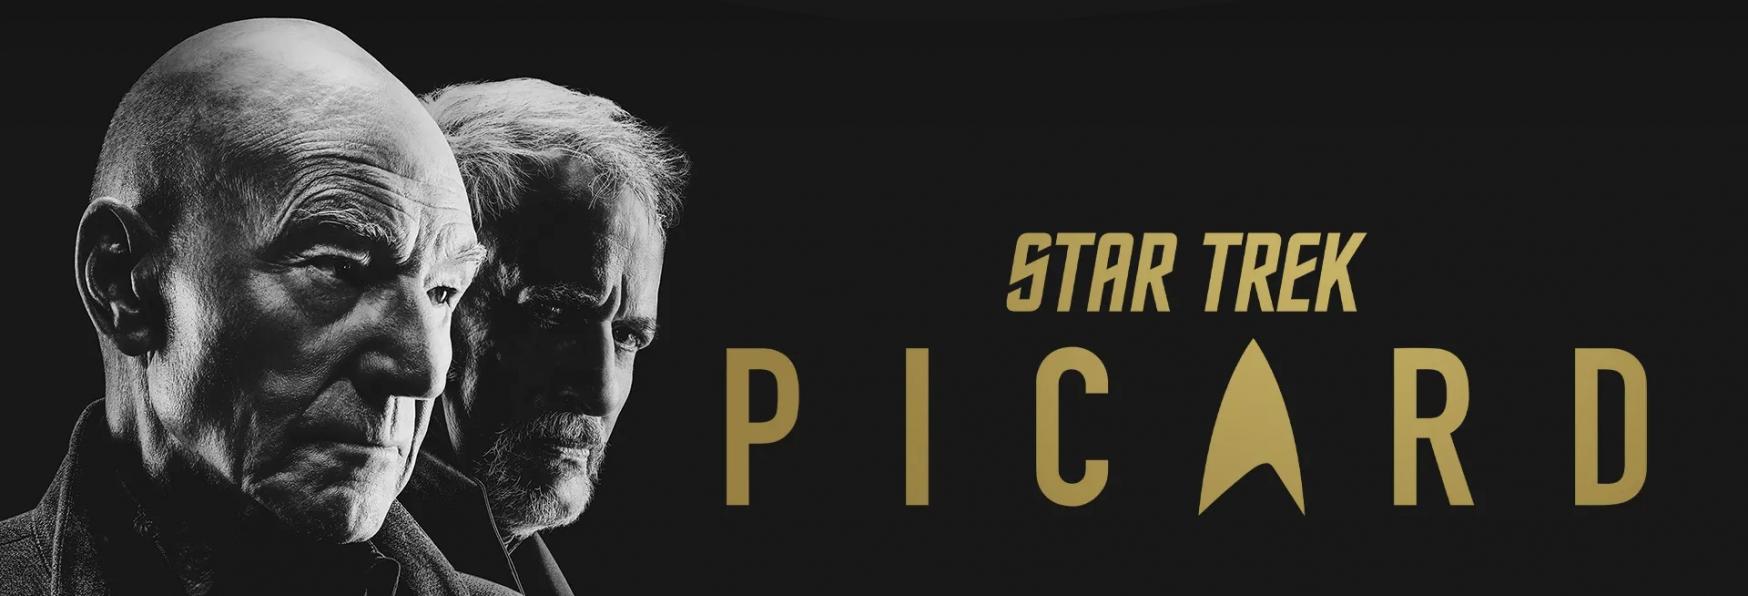 Star Trek: Picard 3 - Terminate le Riprese dell'Ultima Stagione, arriverà nel 2023